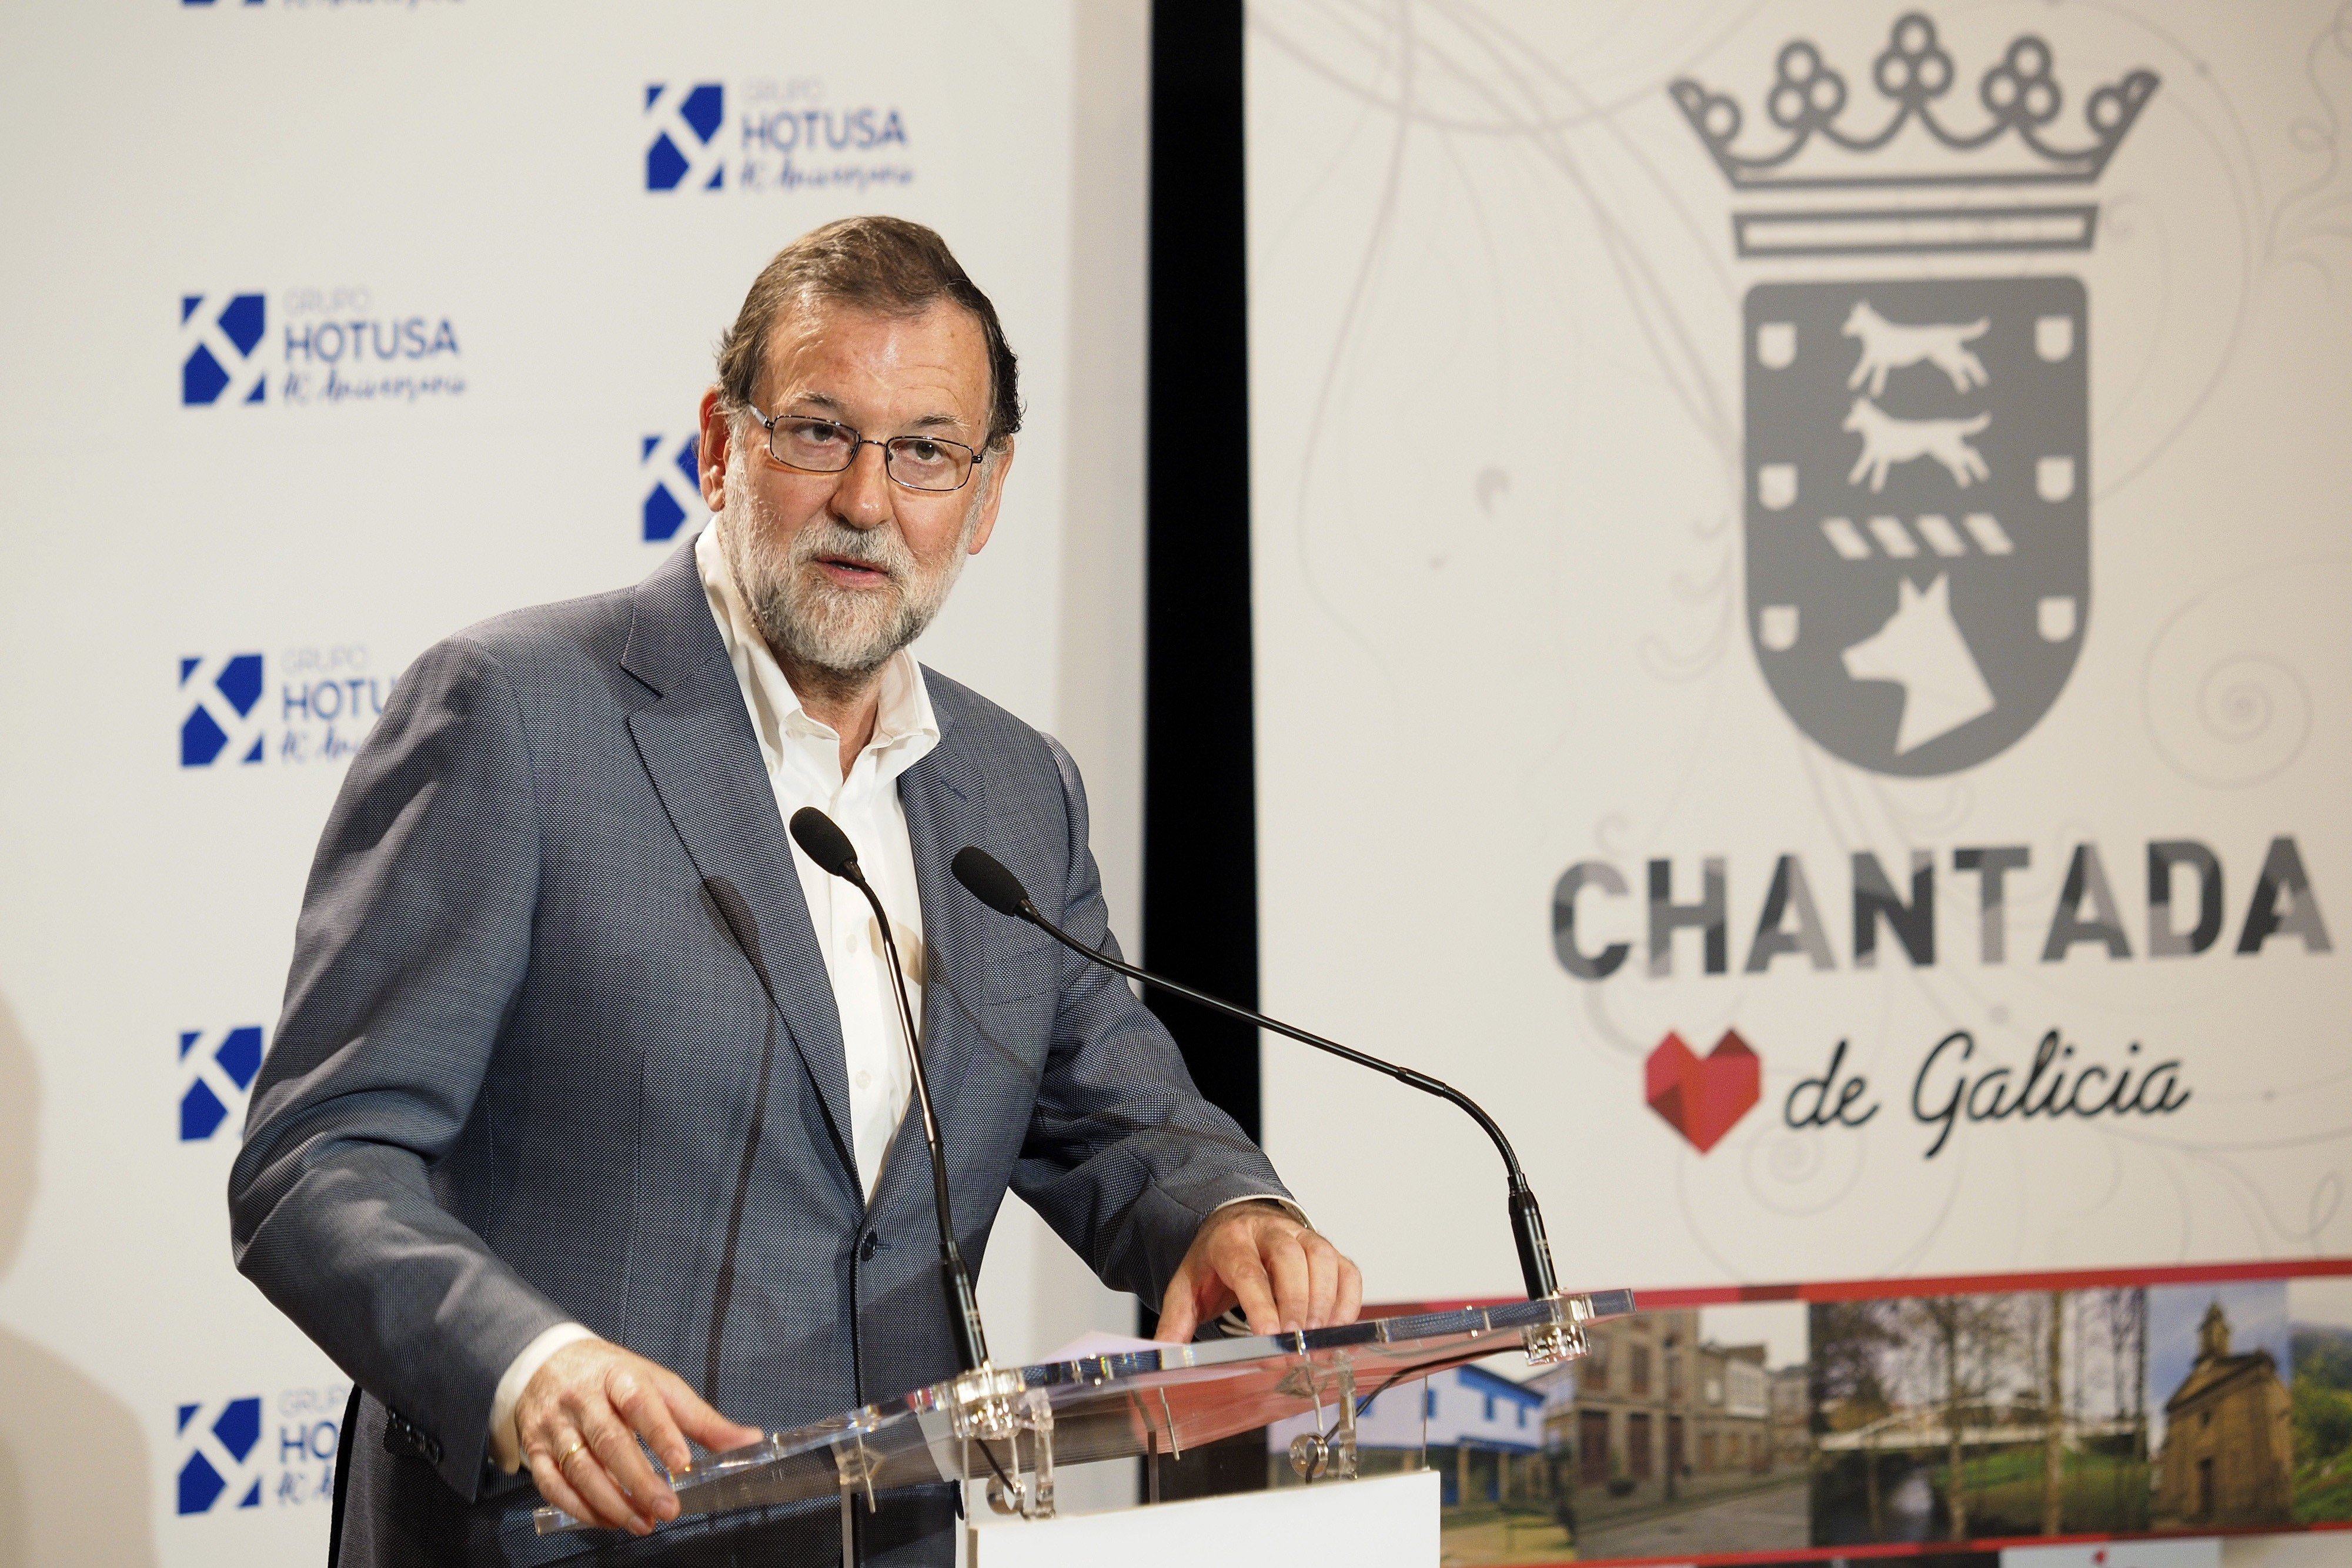 Rajoy hace un llamamiento a los catalanes "sensatos" para "aislar a los radicales"